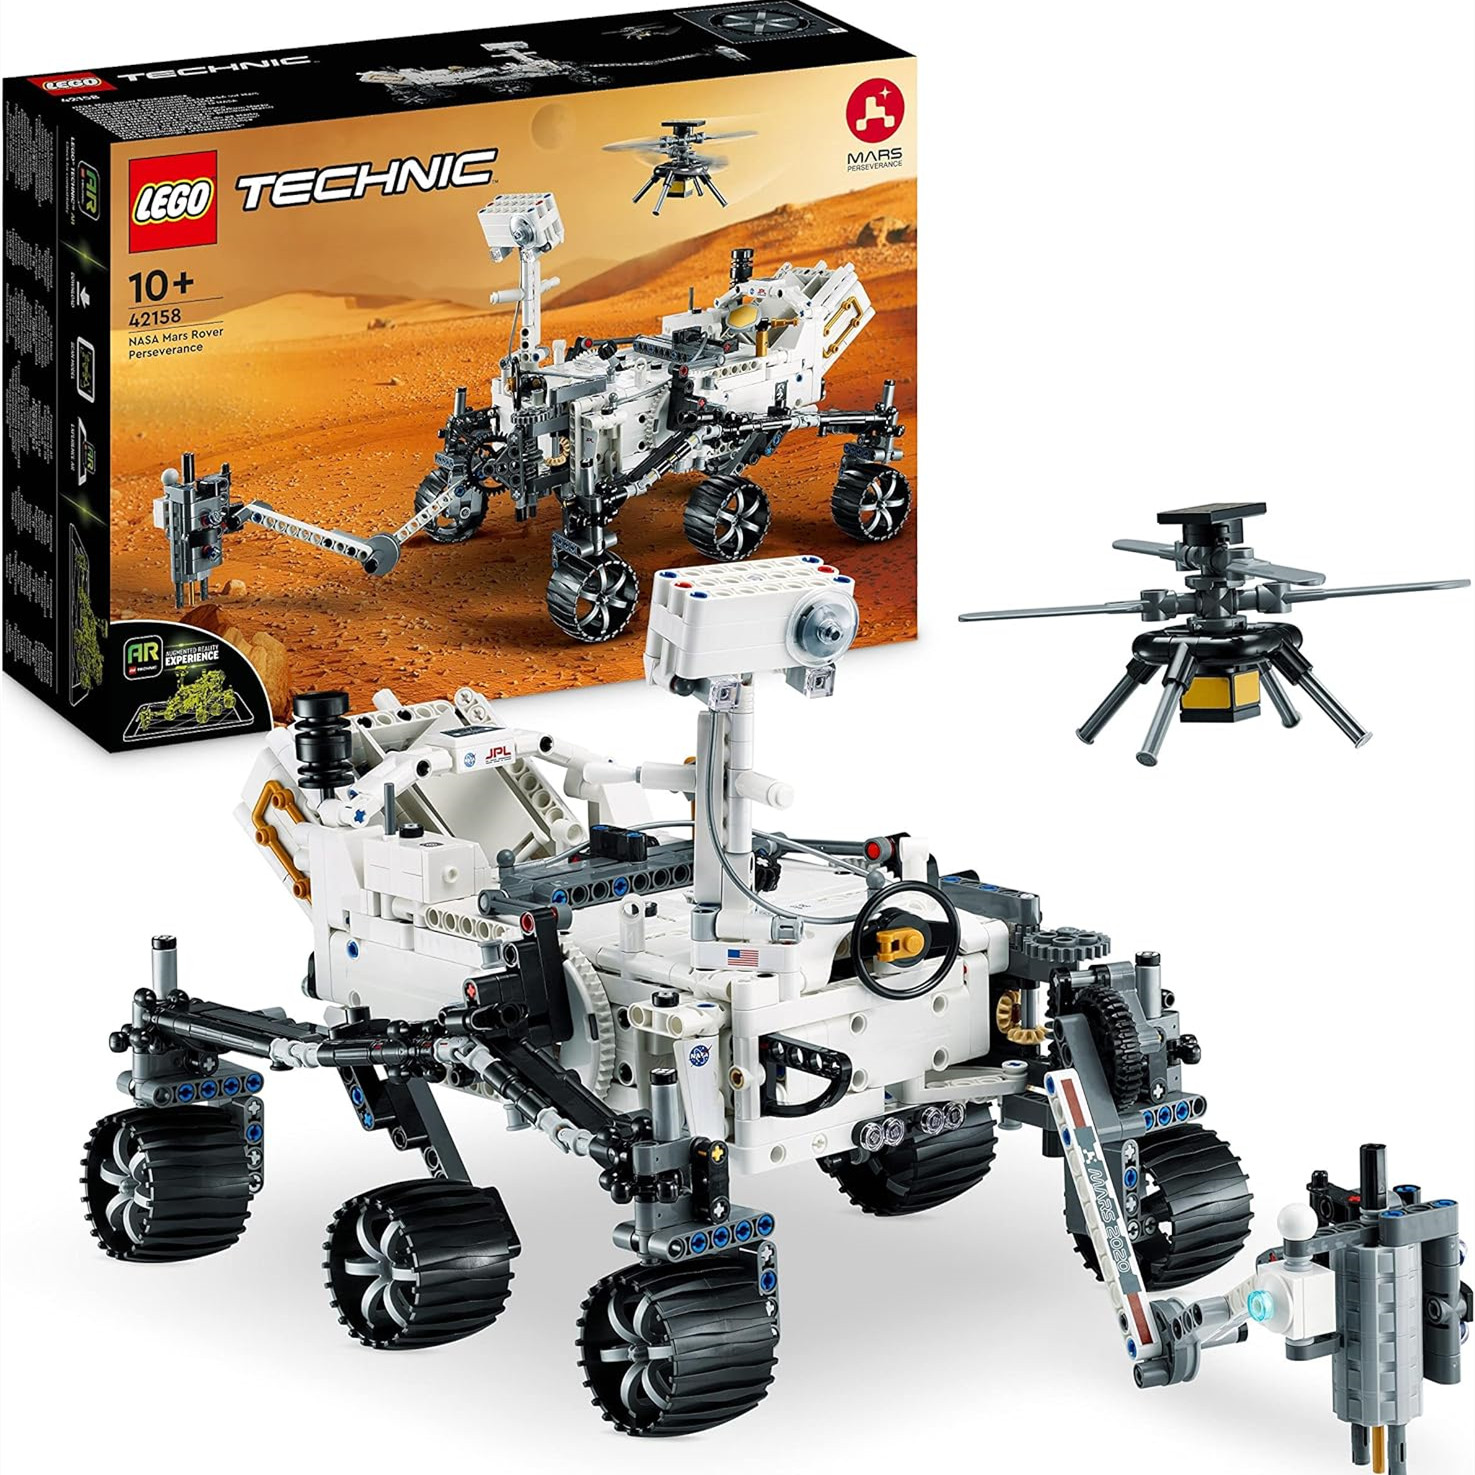 太空迷一定要收！LEGO 42158 科技系列NASA 毅力号火星探测器